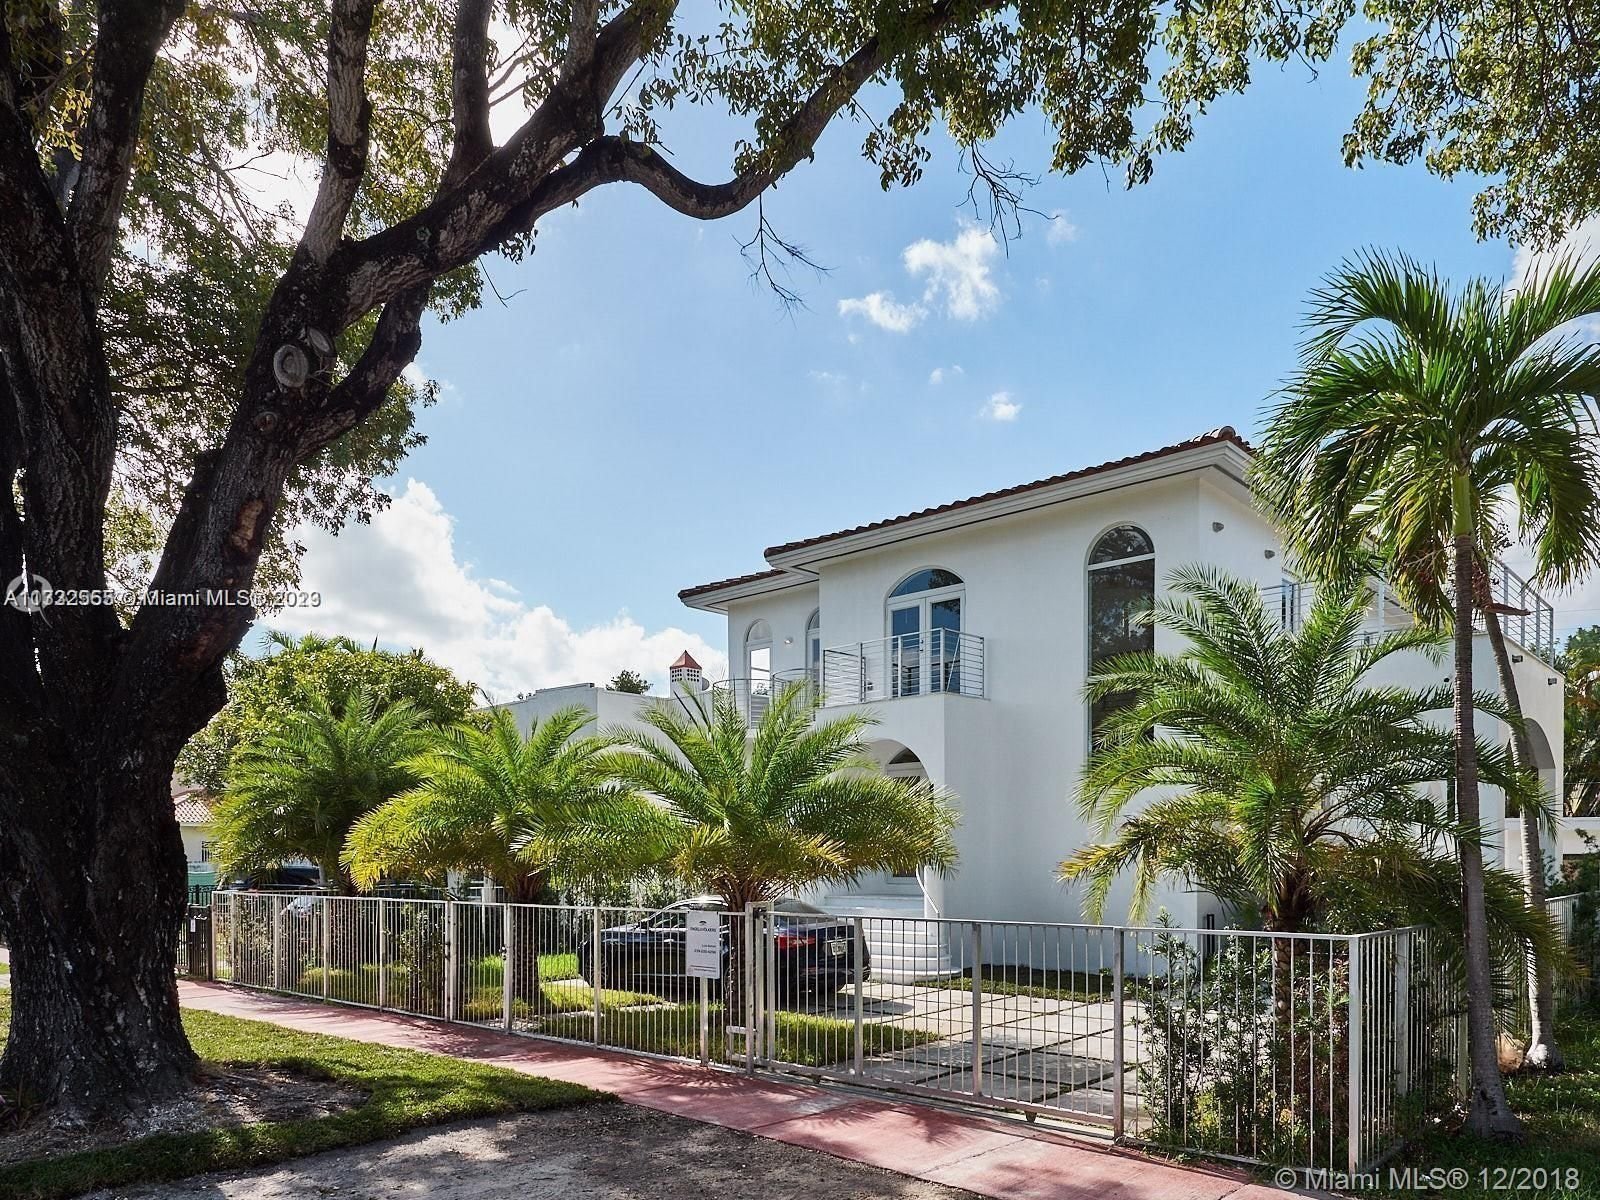 Real estate property located at 2210 Alton Rd, Miami-Dade County, Miami Beach, FL